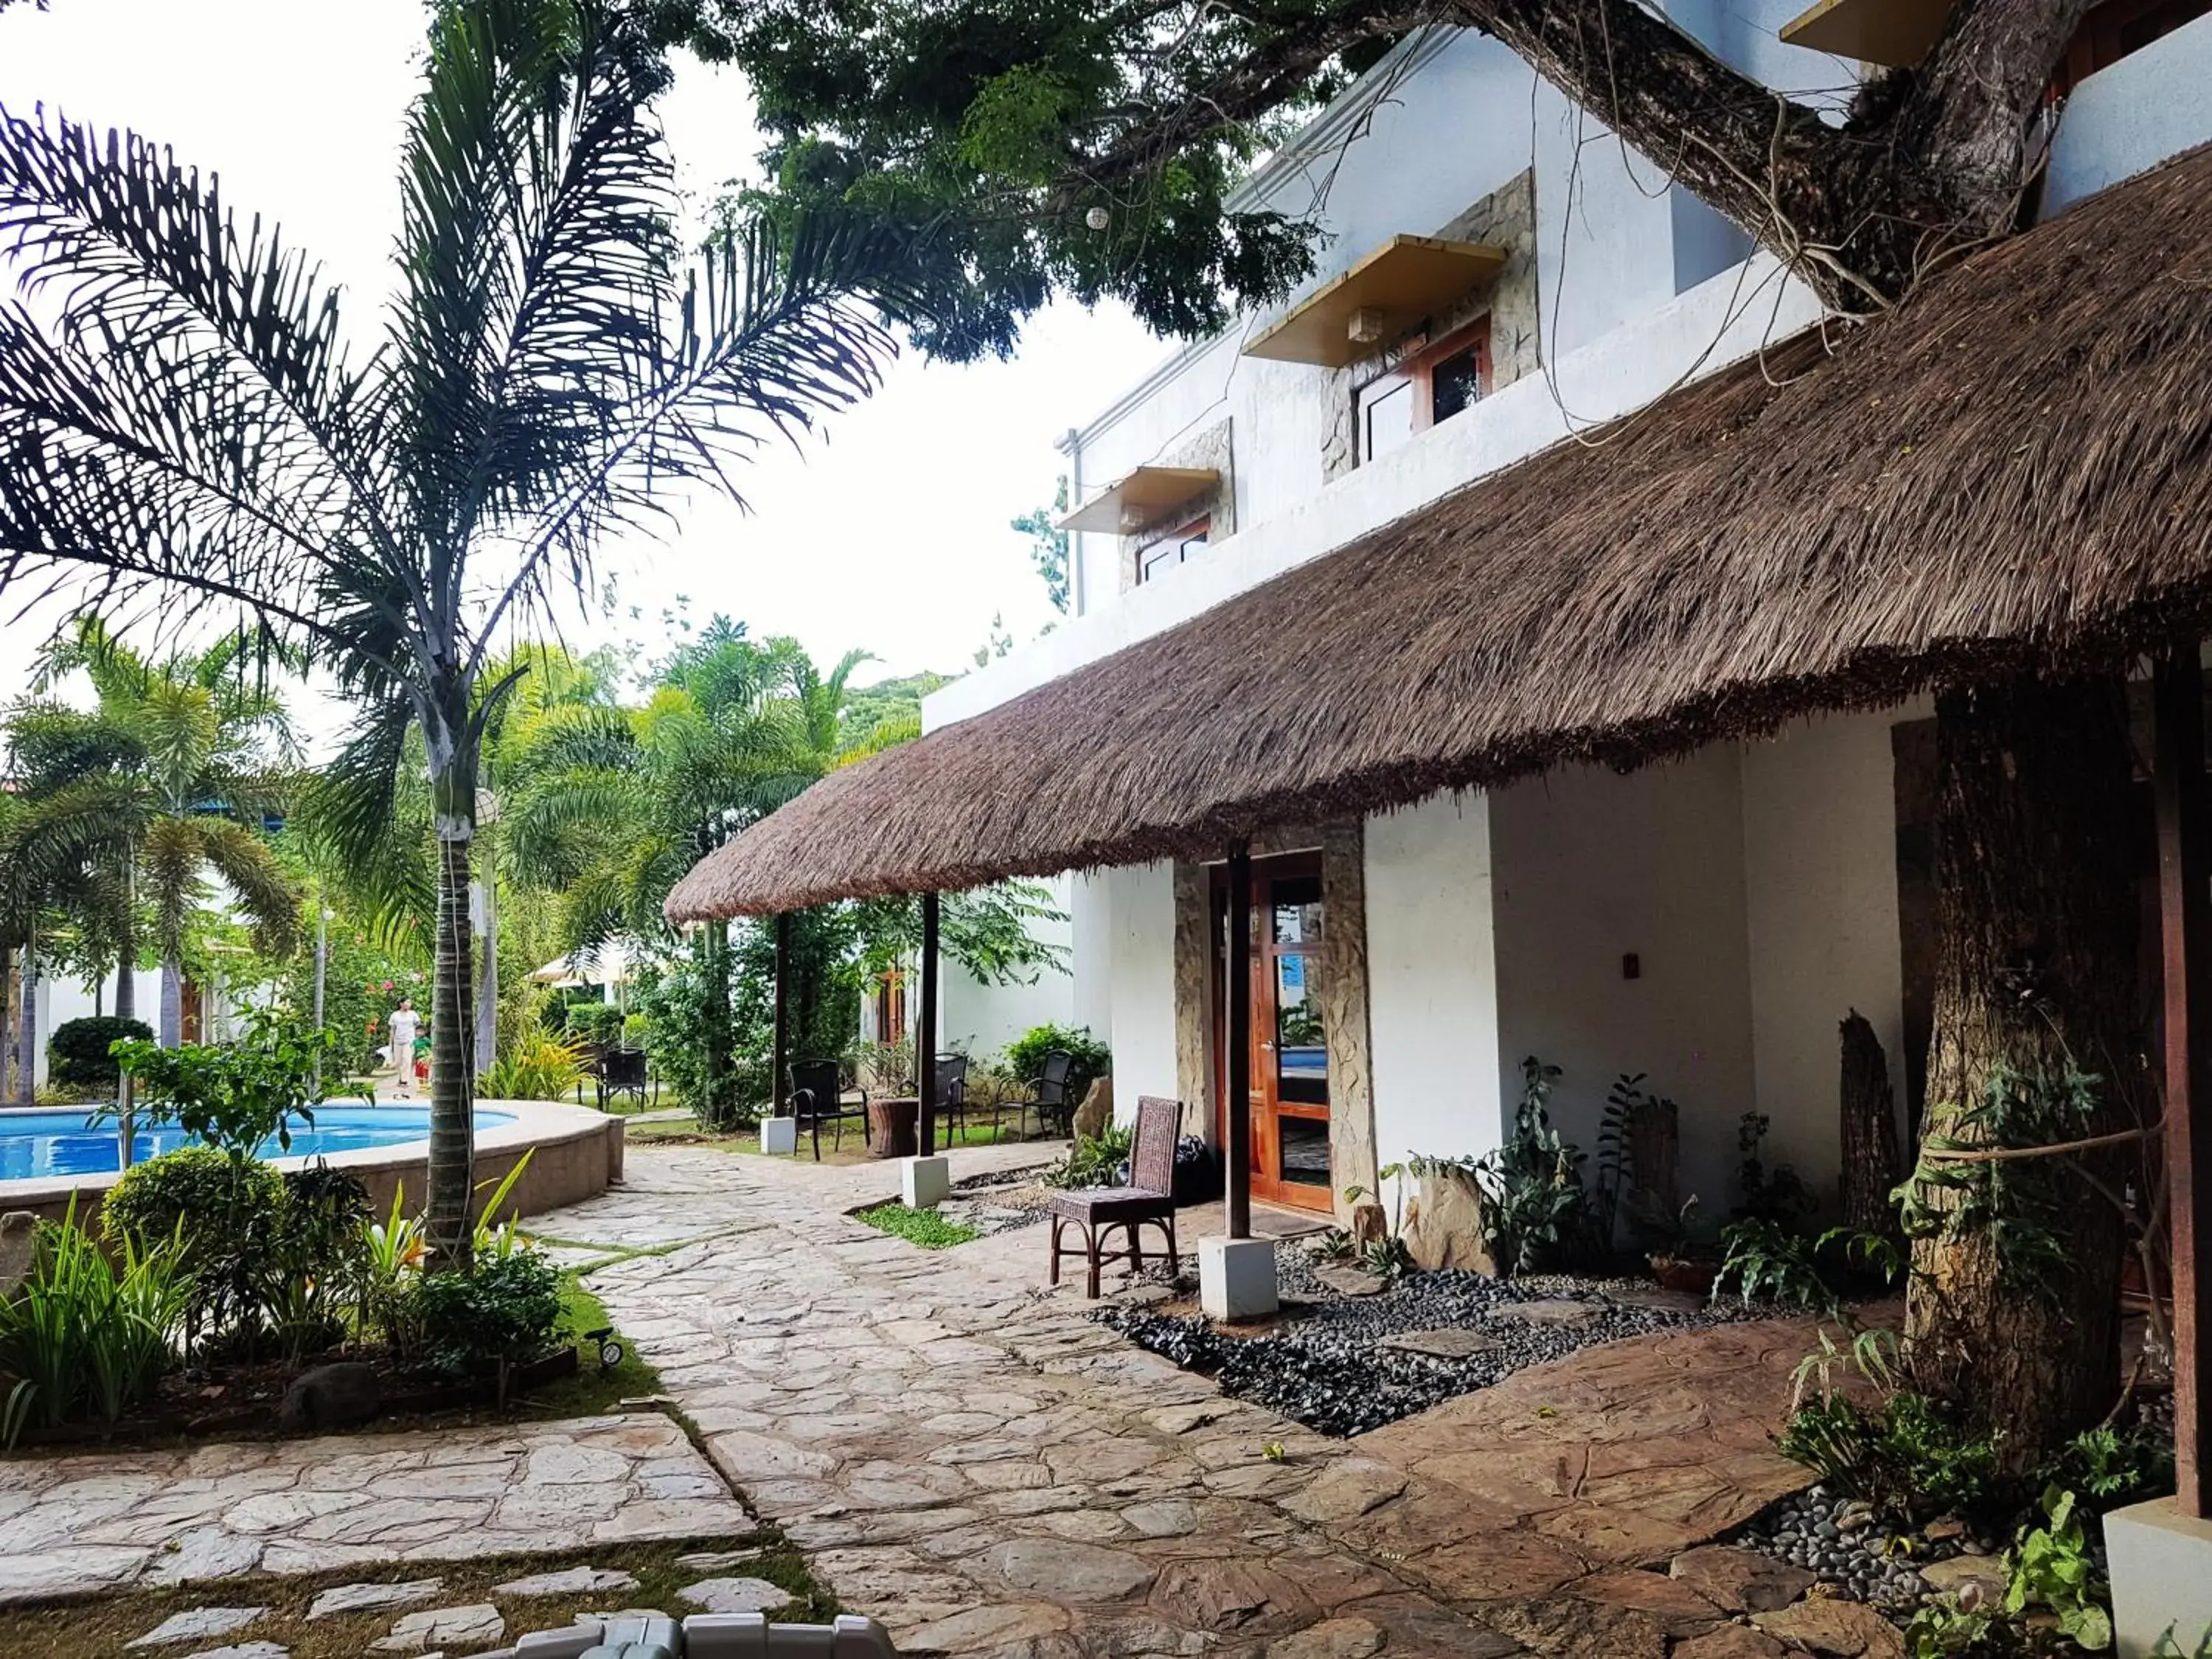 Property building, Patio/Outdoor Area in Acacia Tree Garden Hotel